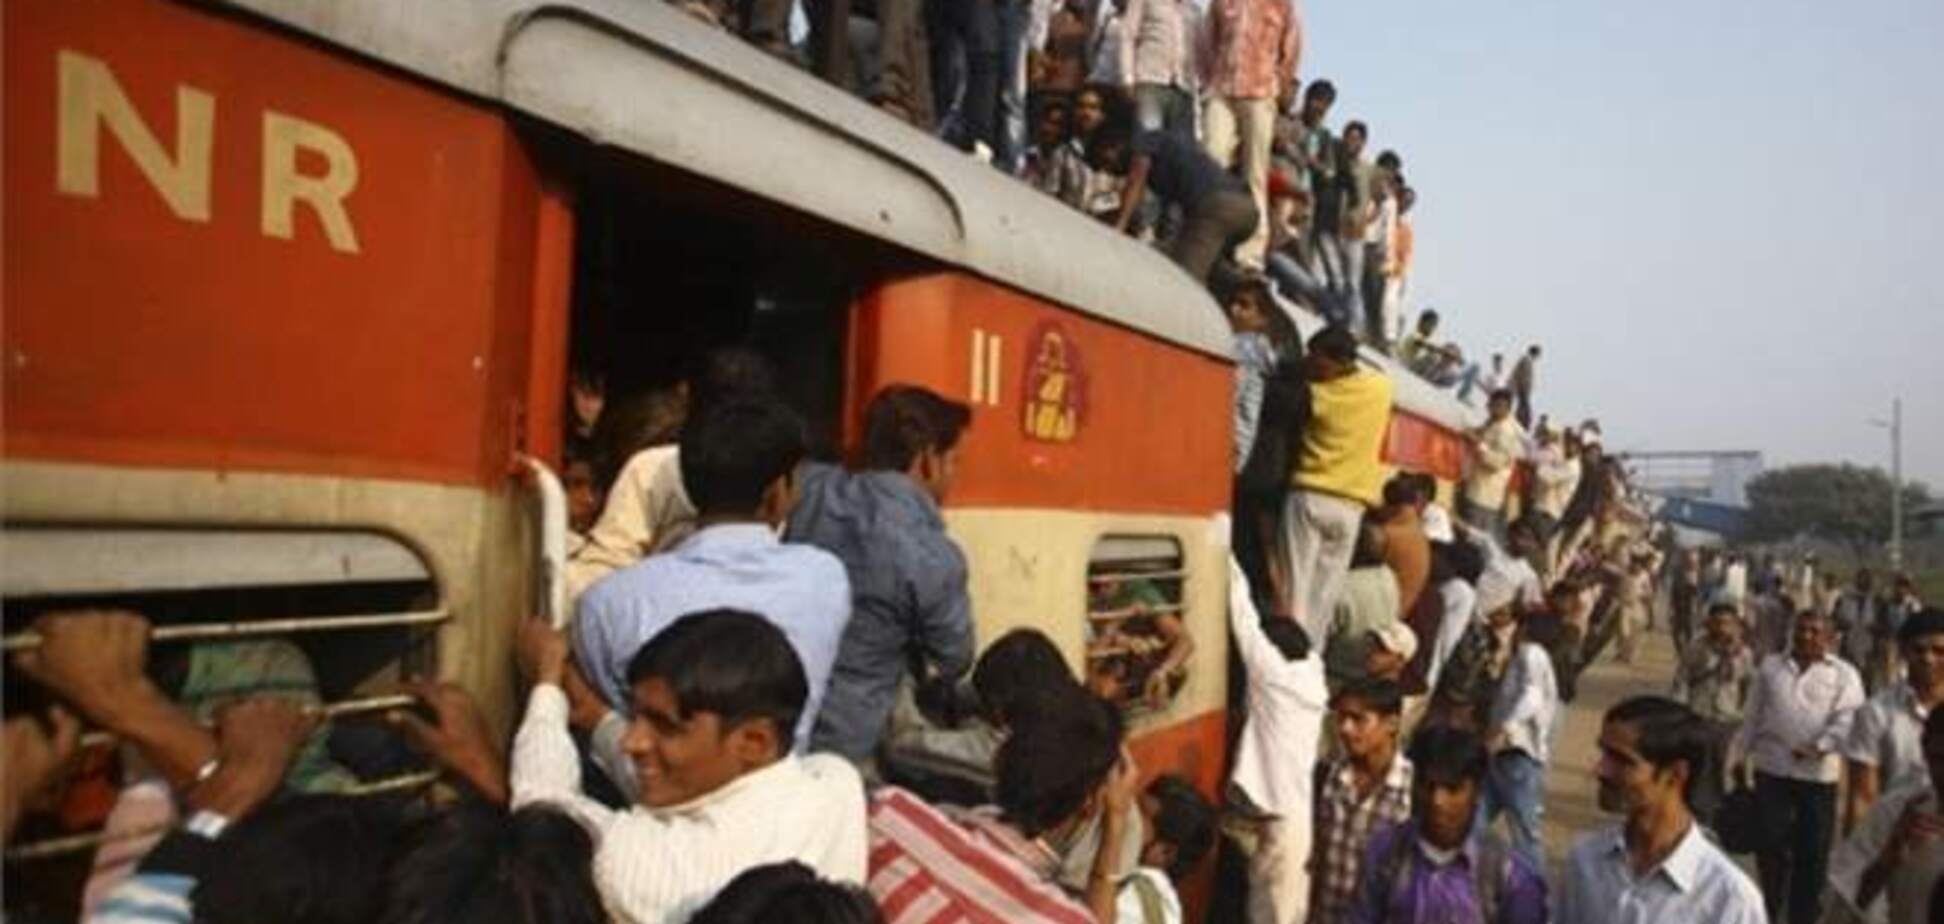 Железнодорожная трагедия в Индии: толпа взяла в заложники сотрудников станции